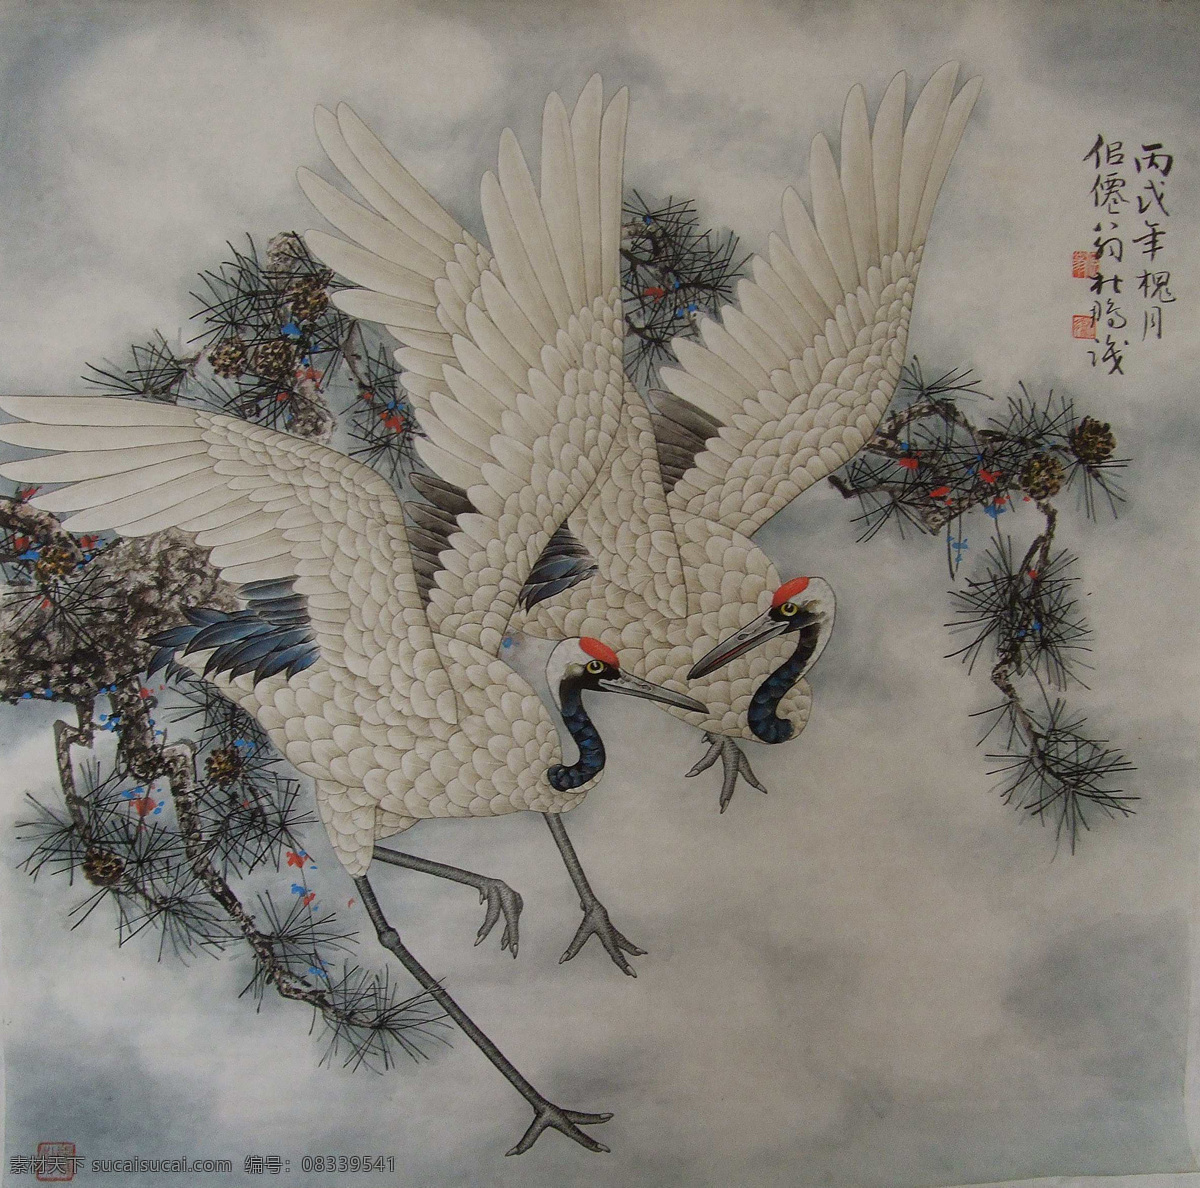 仙鹤 松树 禽鸟 古典 国画 工笔 花鸟 绘画书法 文化艺术